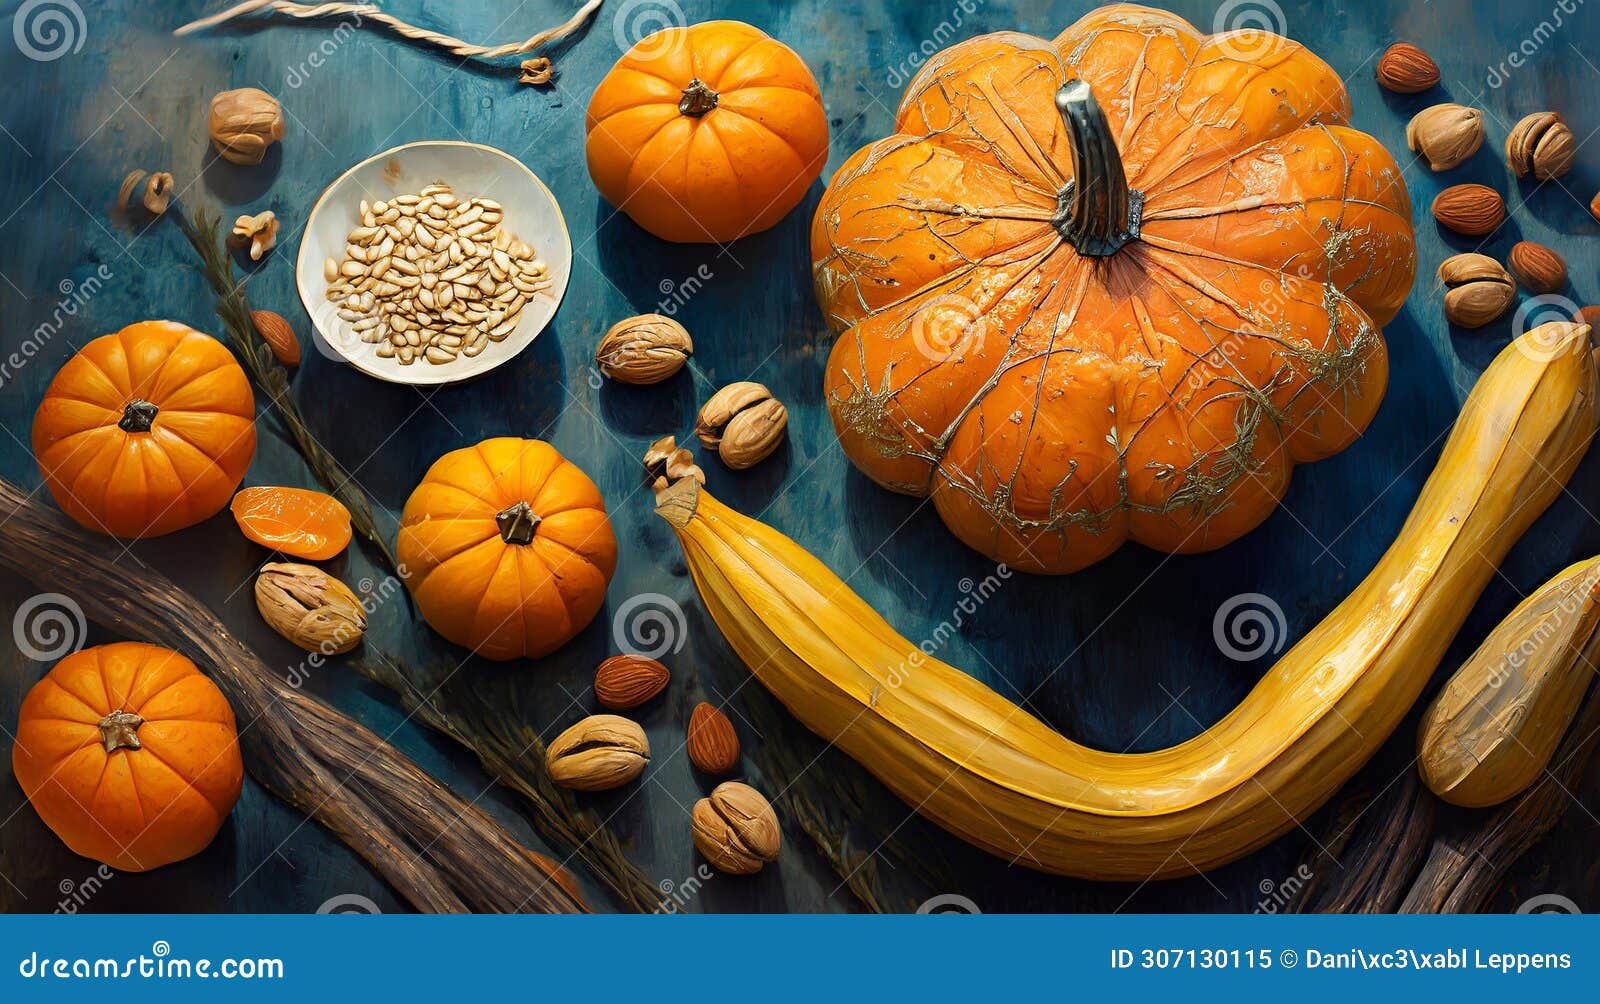 pumpkins and orange stillife